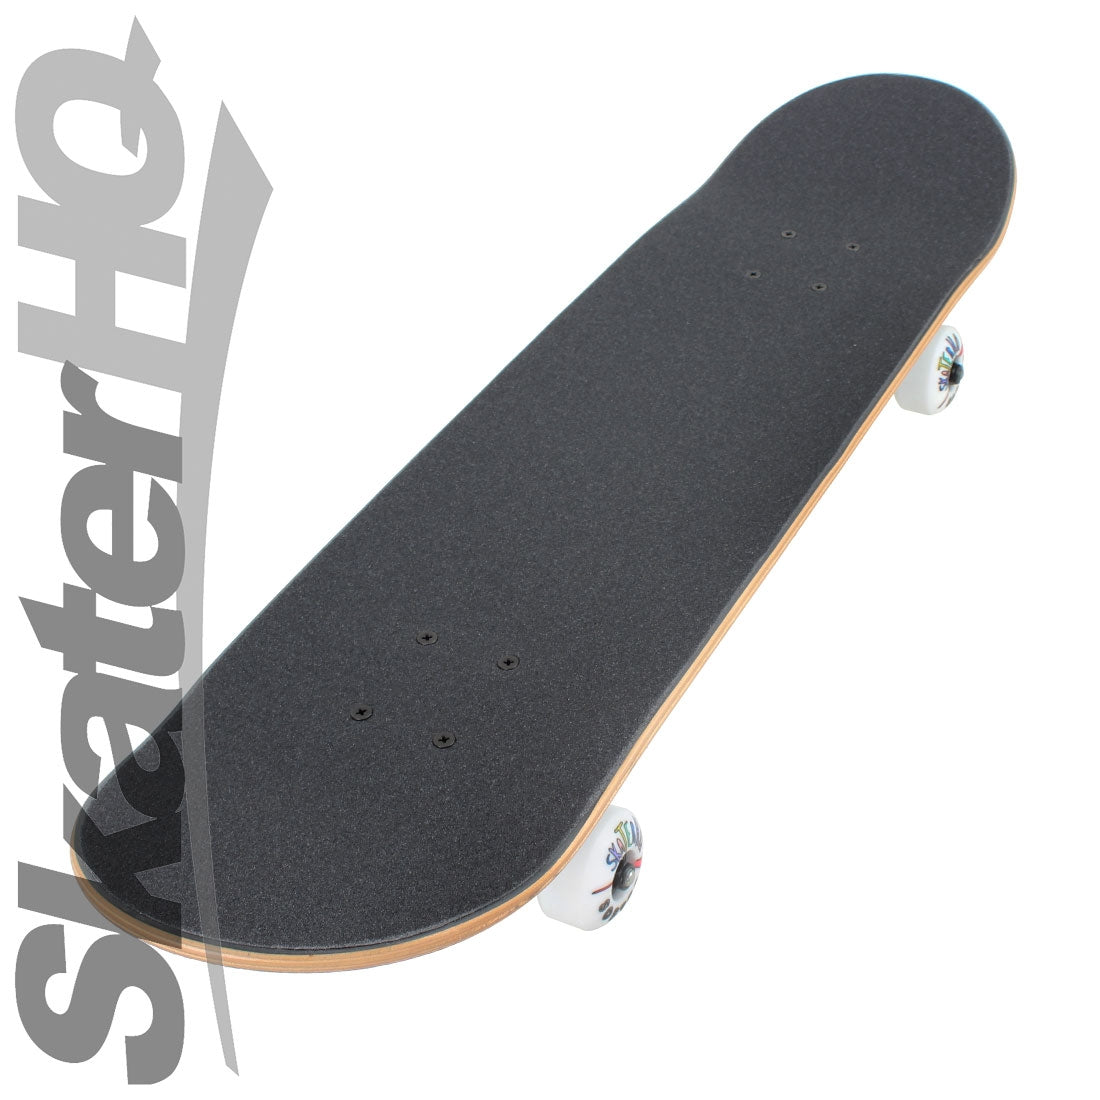 Skater HQ Killer Python V2 7.25 Mini S Complete Skateboard Completes Modern Street